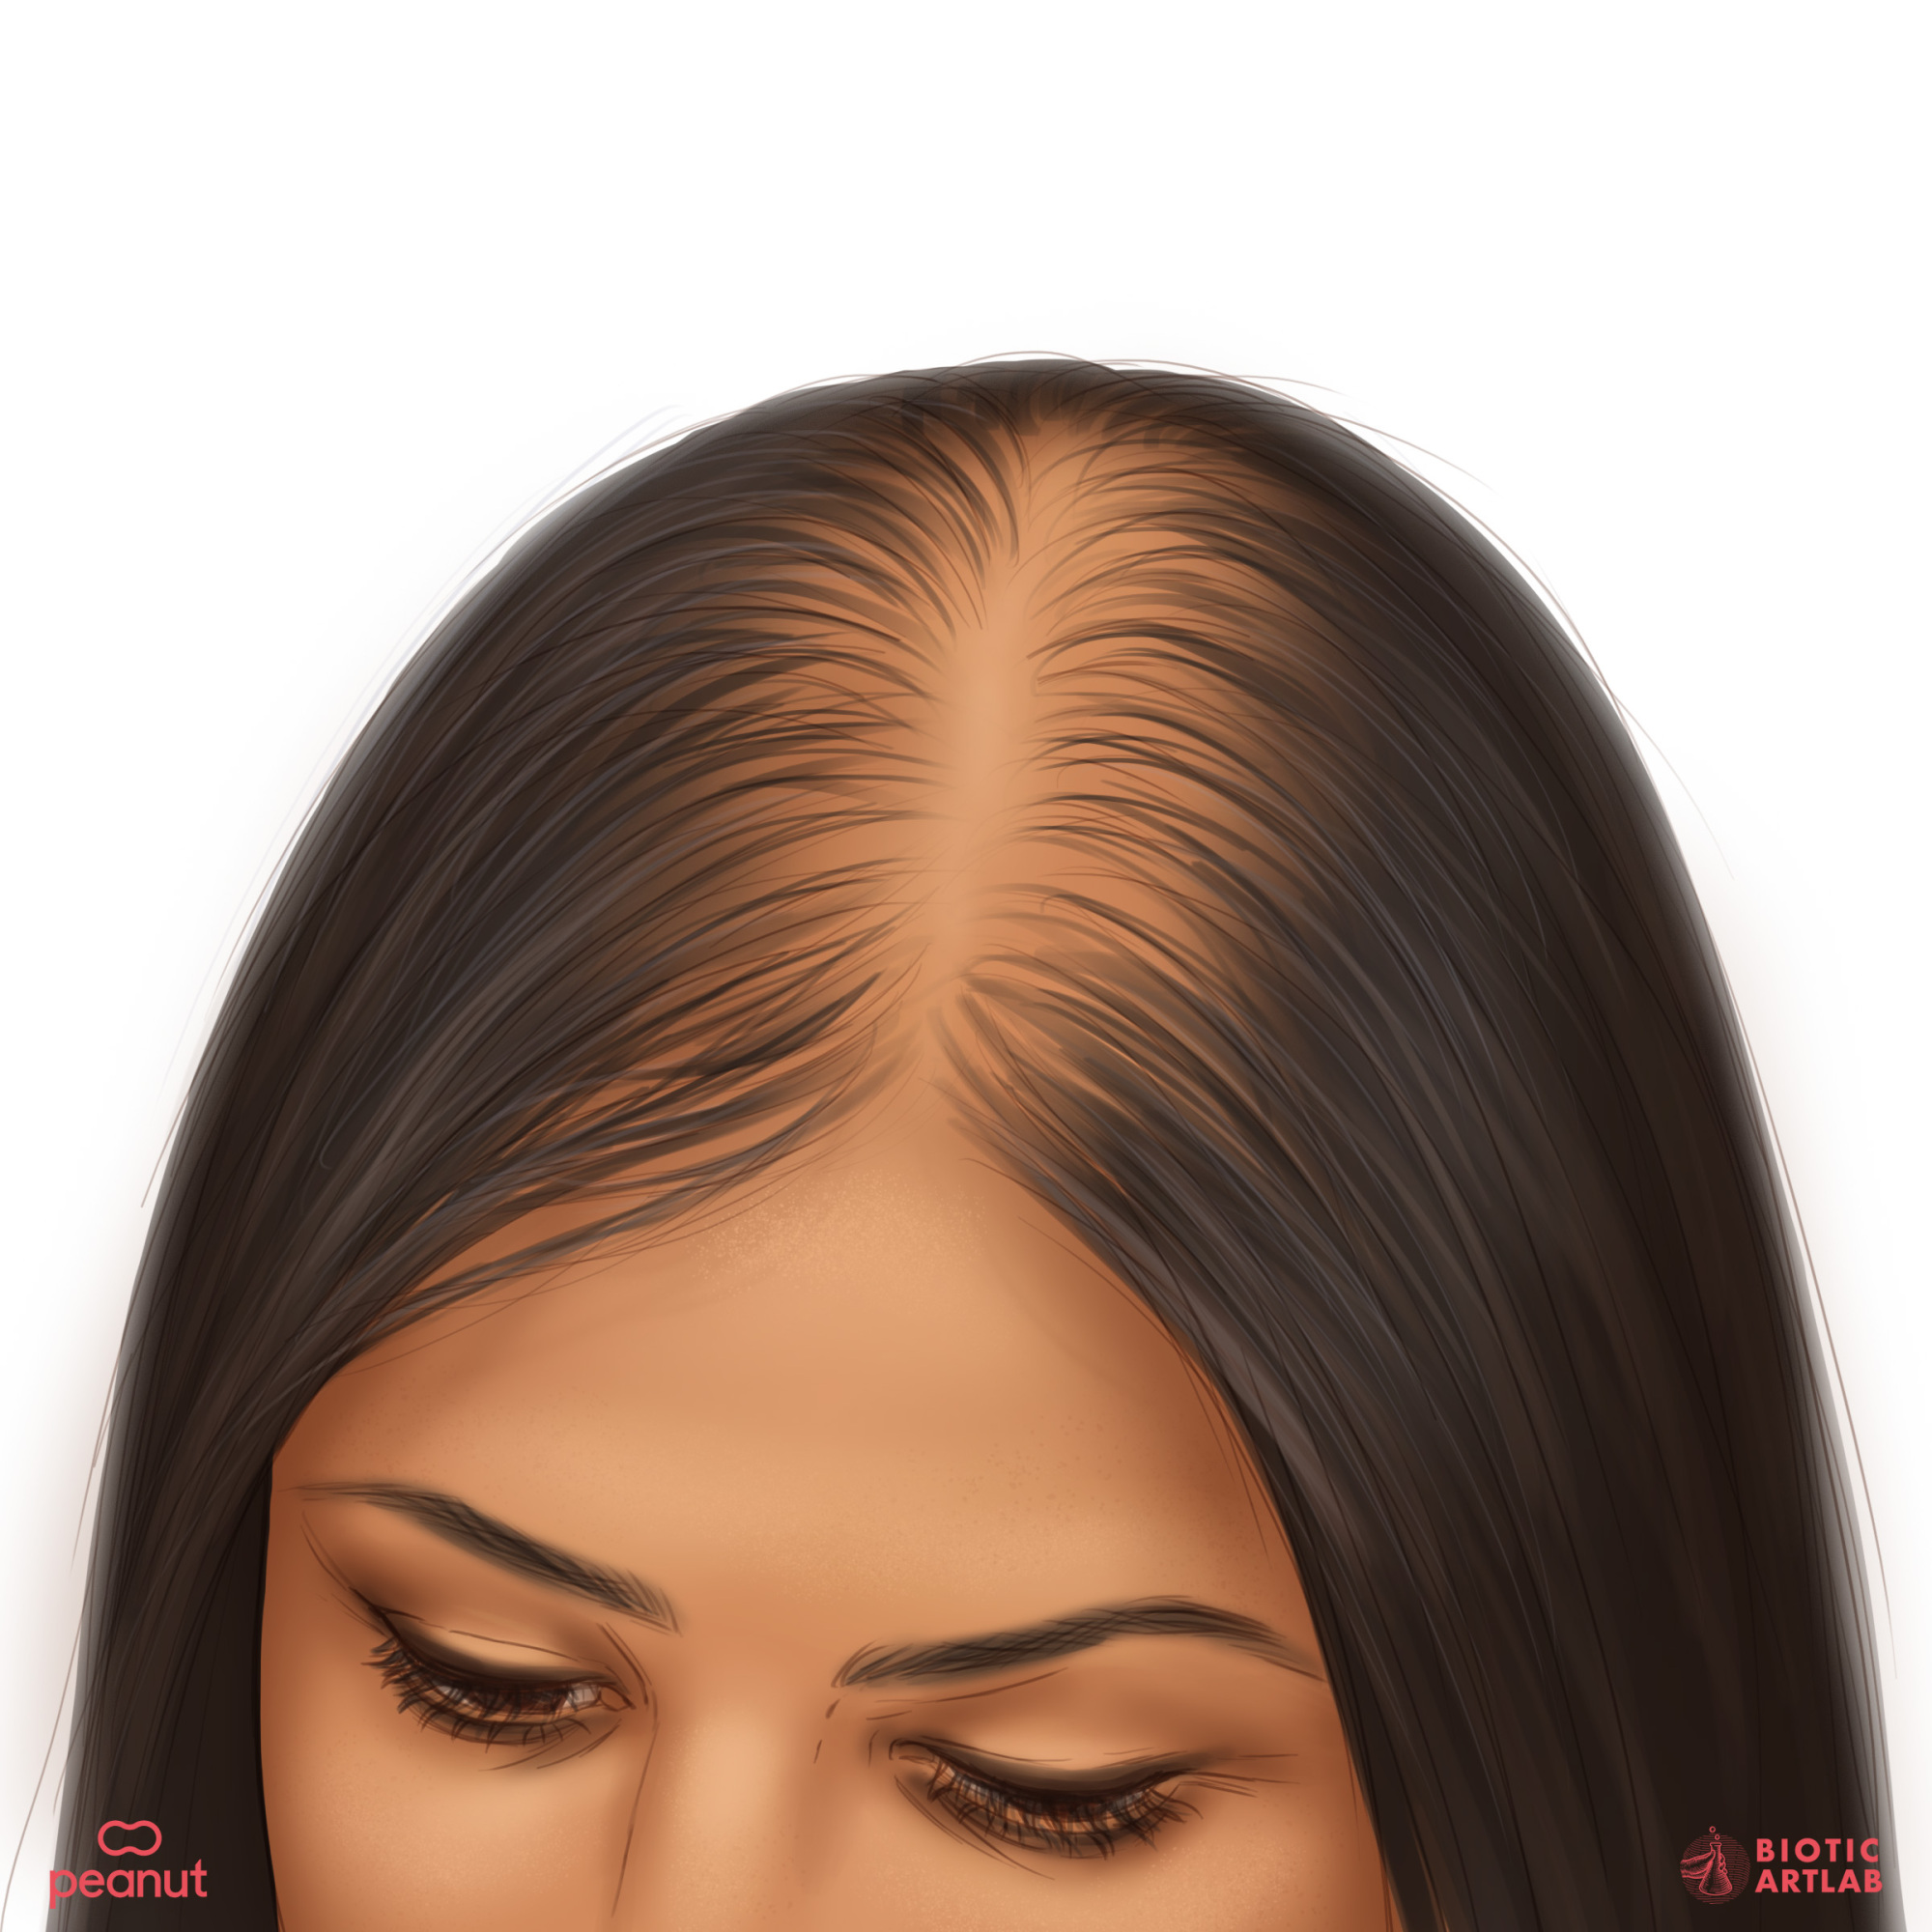 Image d'une femme souffrant de perte de cheveux, avec le haut de sa tête montrant des cheveux clairsemés.